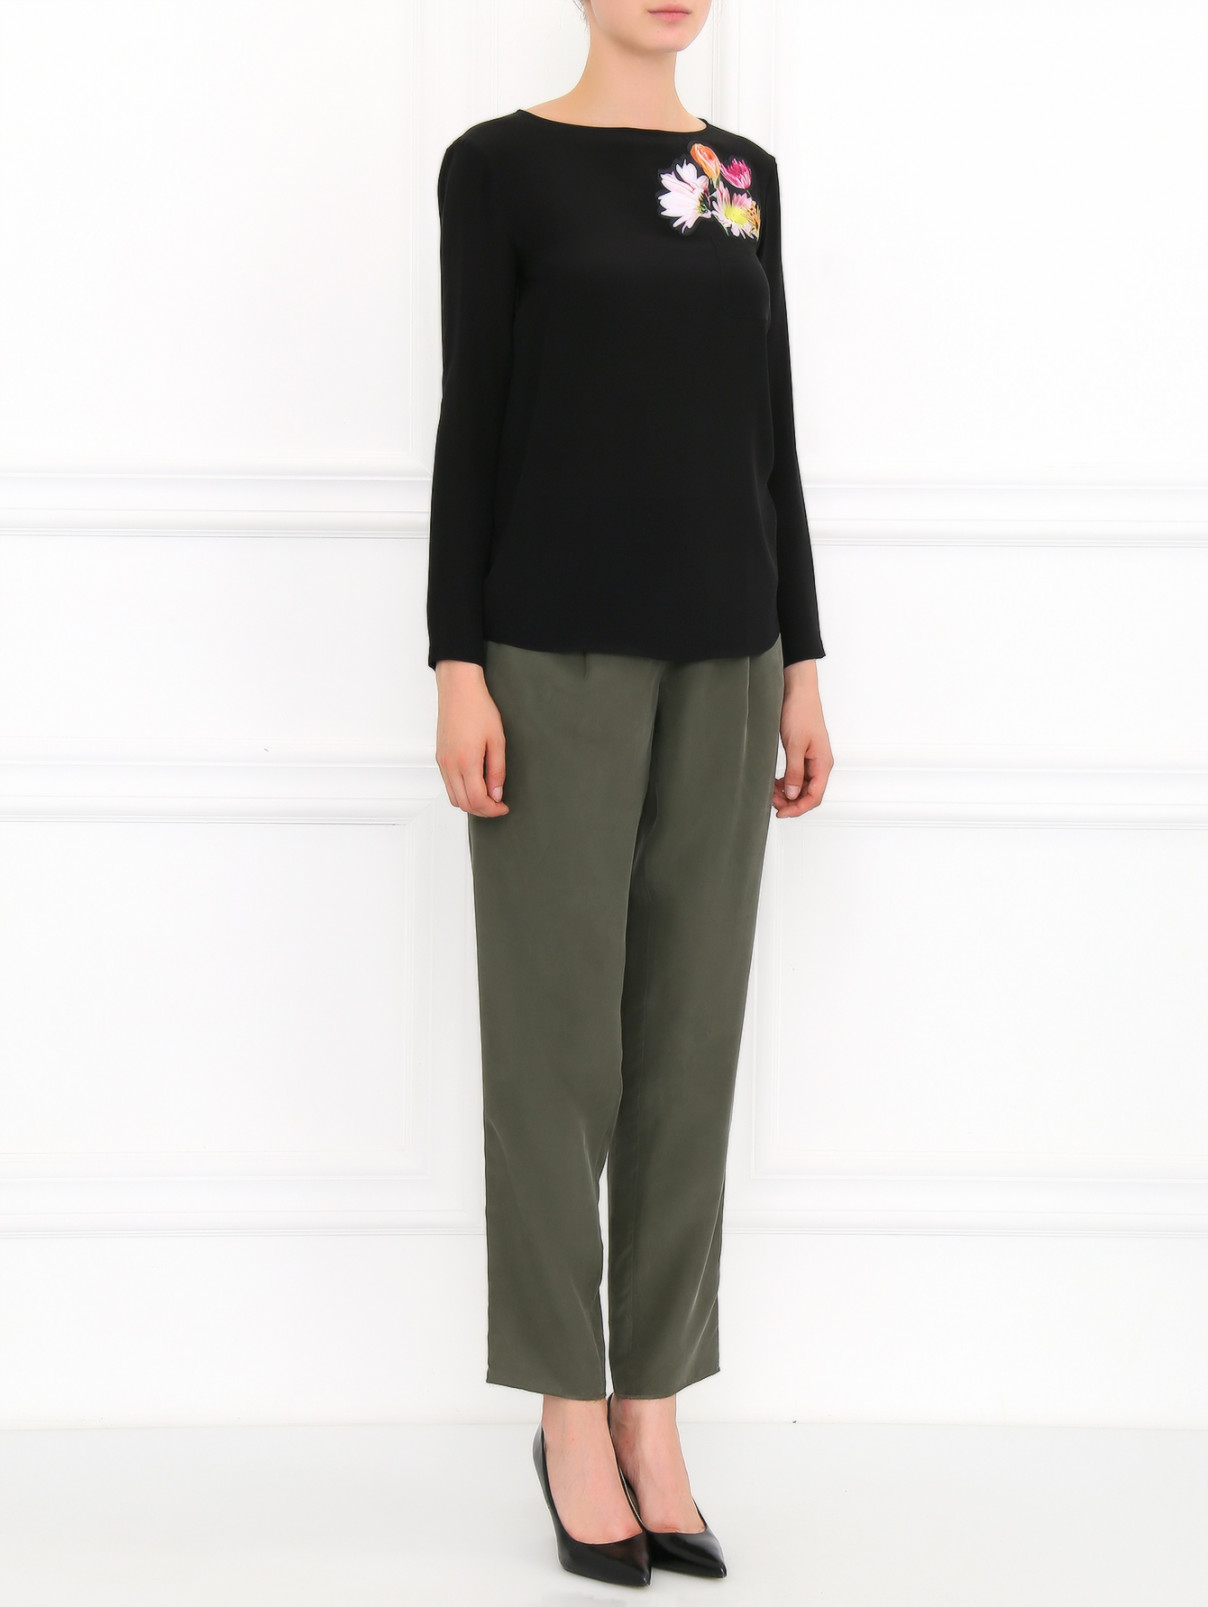 Блуза из шелка с аппликацией Moschino Cheap&Chic  –  Модель Общий вид  – Цвет:  Черный